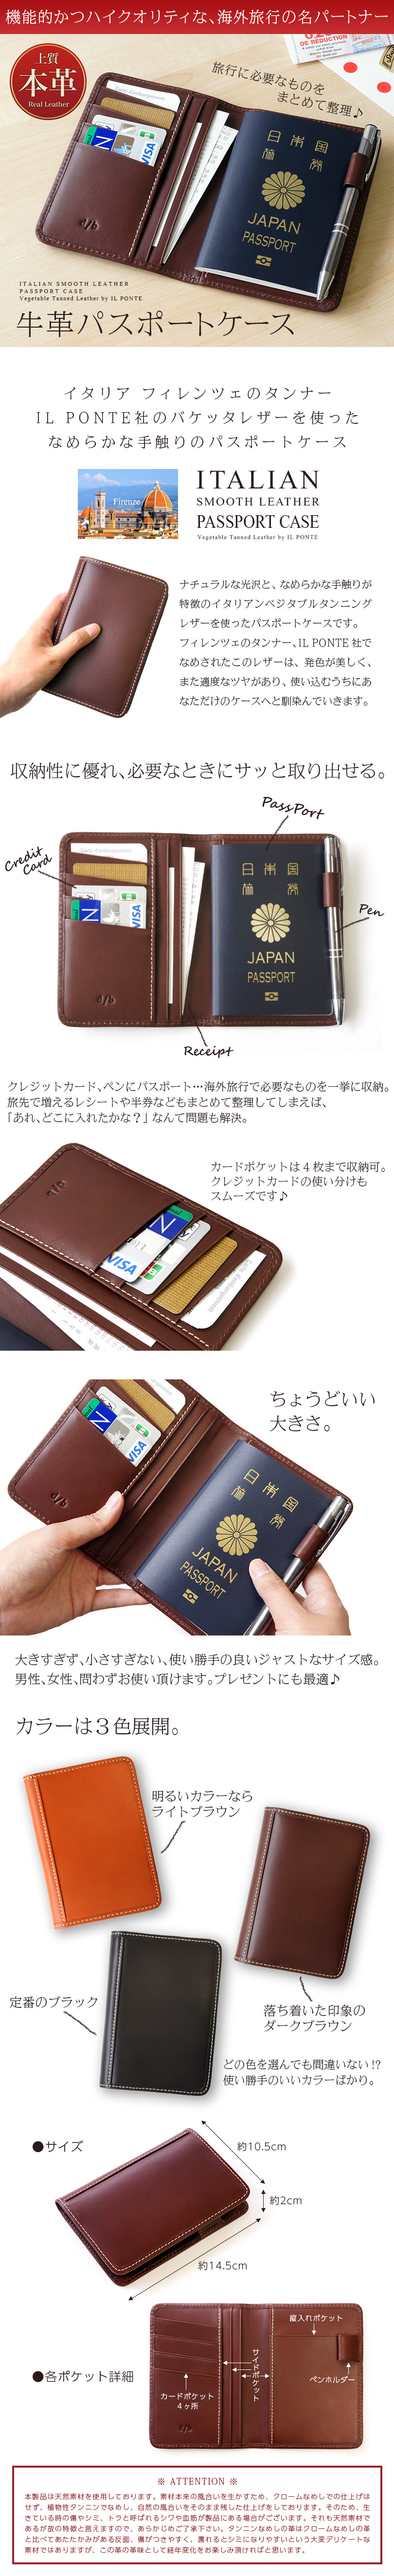 DUCT 牛革 スムースレザー PassPort Case NL-191』 本革 バケッタレザー パスポート入れ パスポートケース